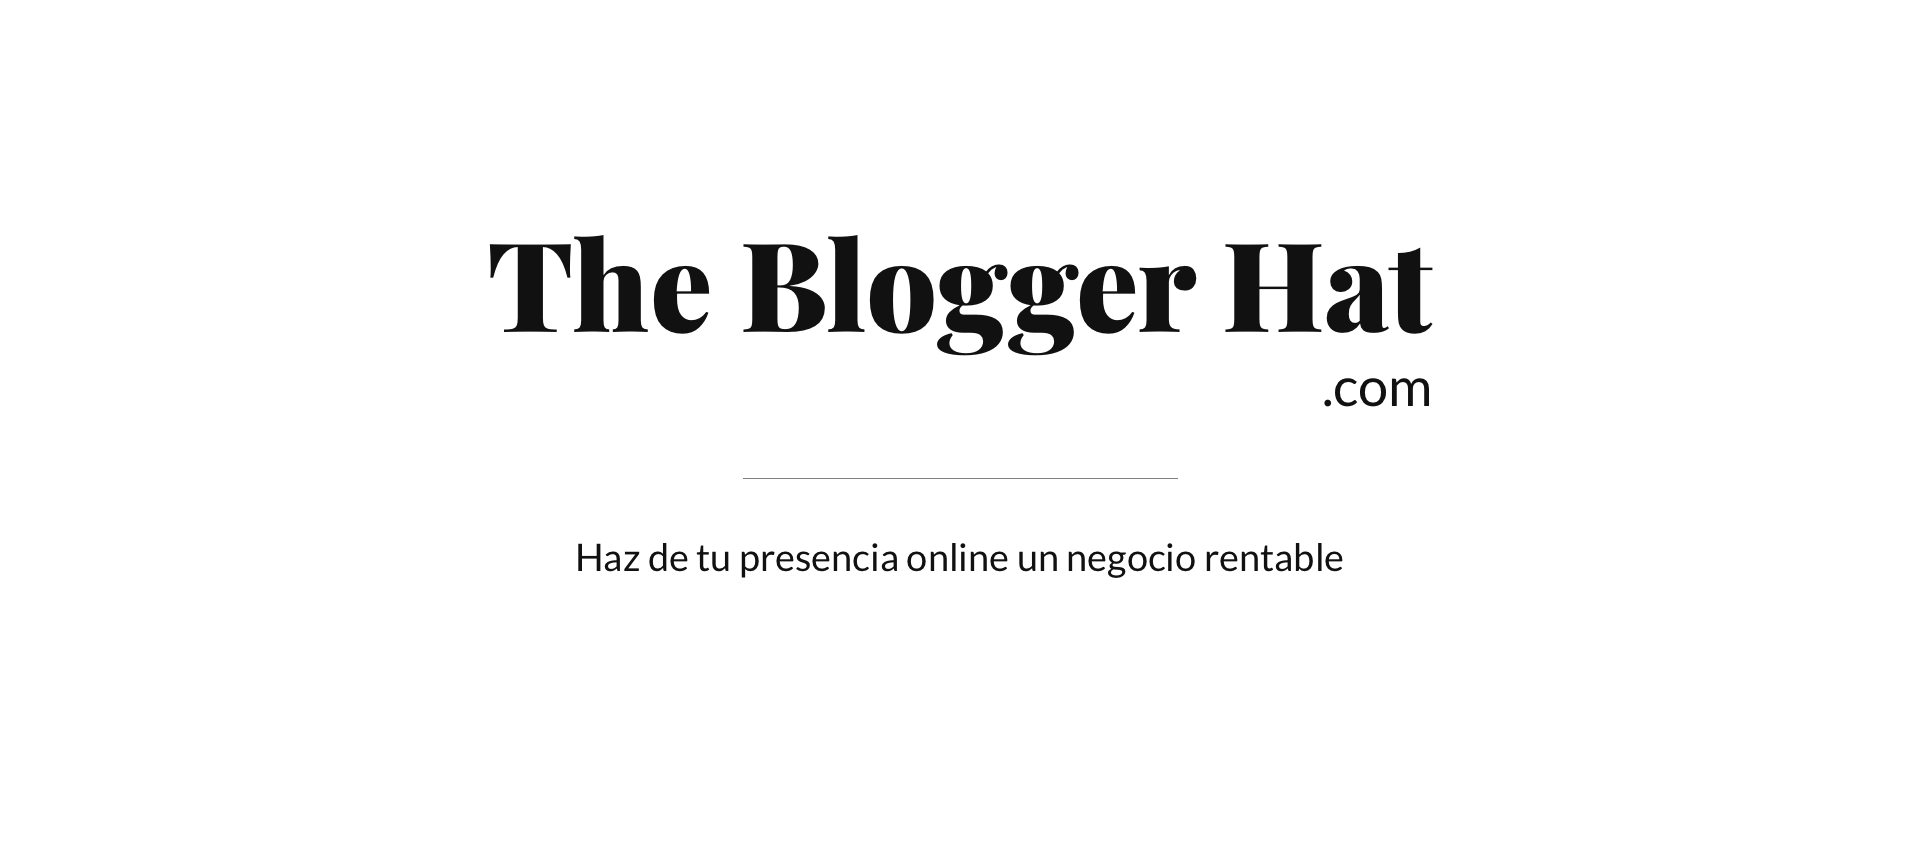 The Blogger Hat - Haz de tu presencia online un negocio rentable